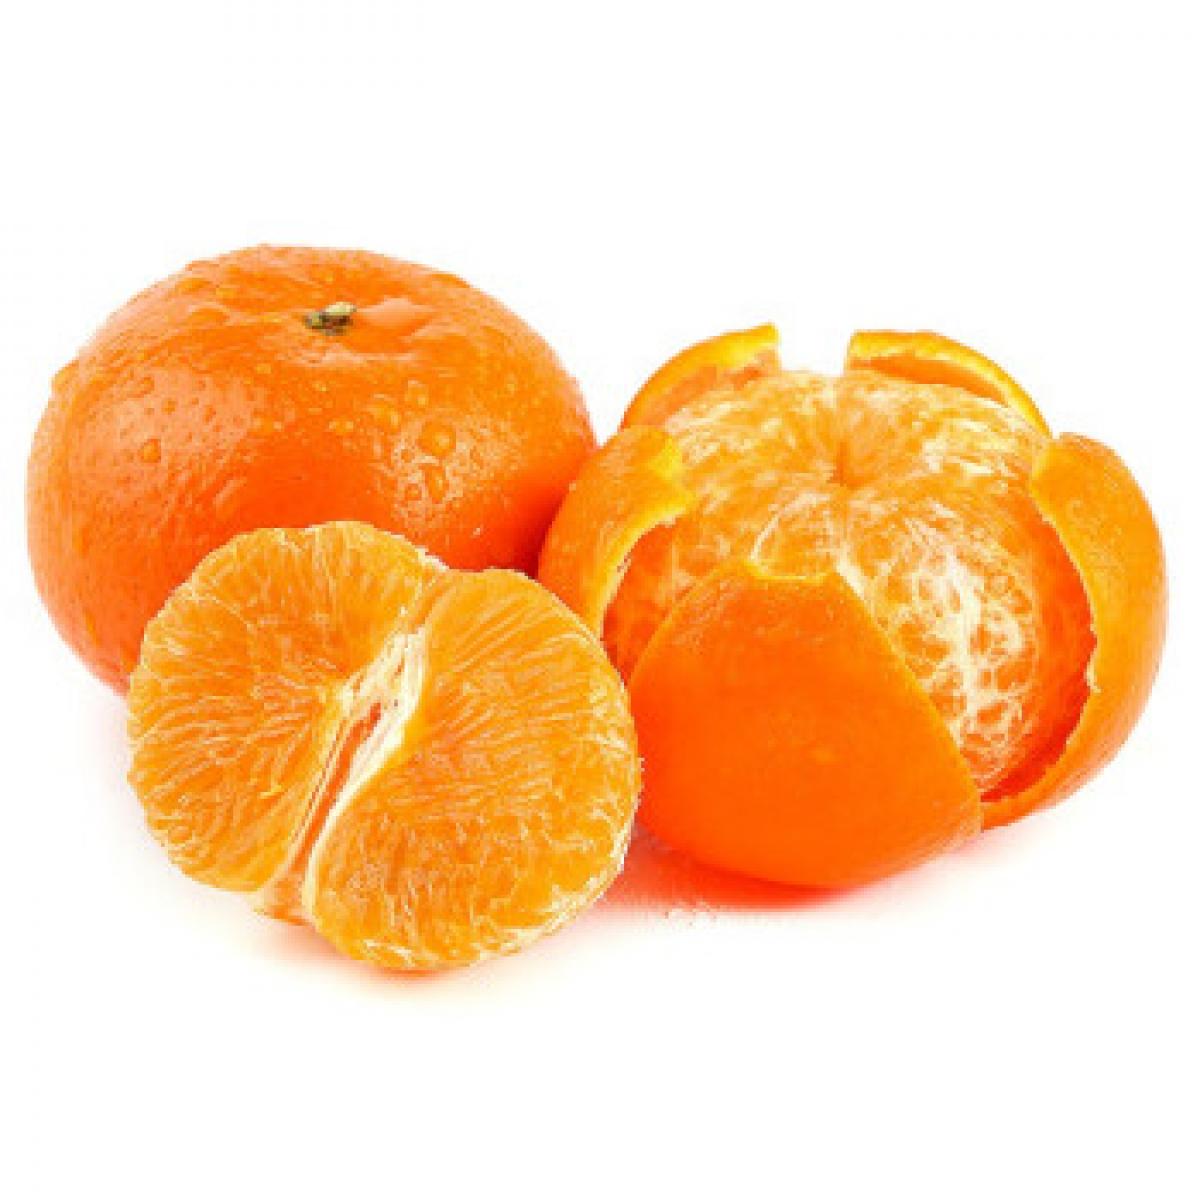 【好乐源称重】广西 沃柑 柑橘 中果